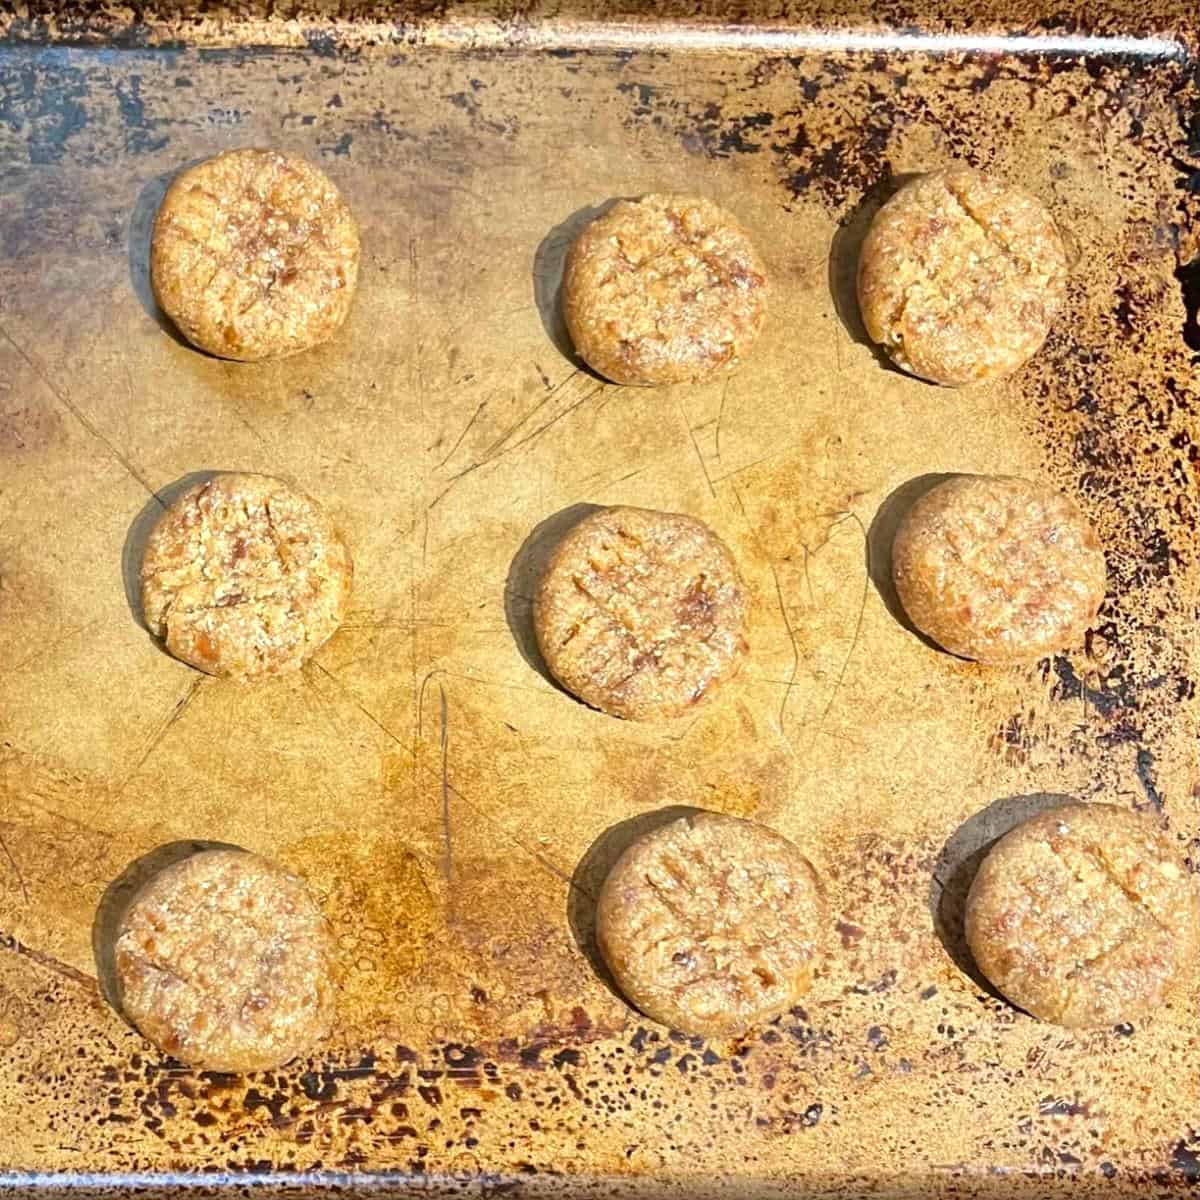 Vegan almond flour cookies on baking sheet before baking.